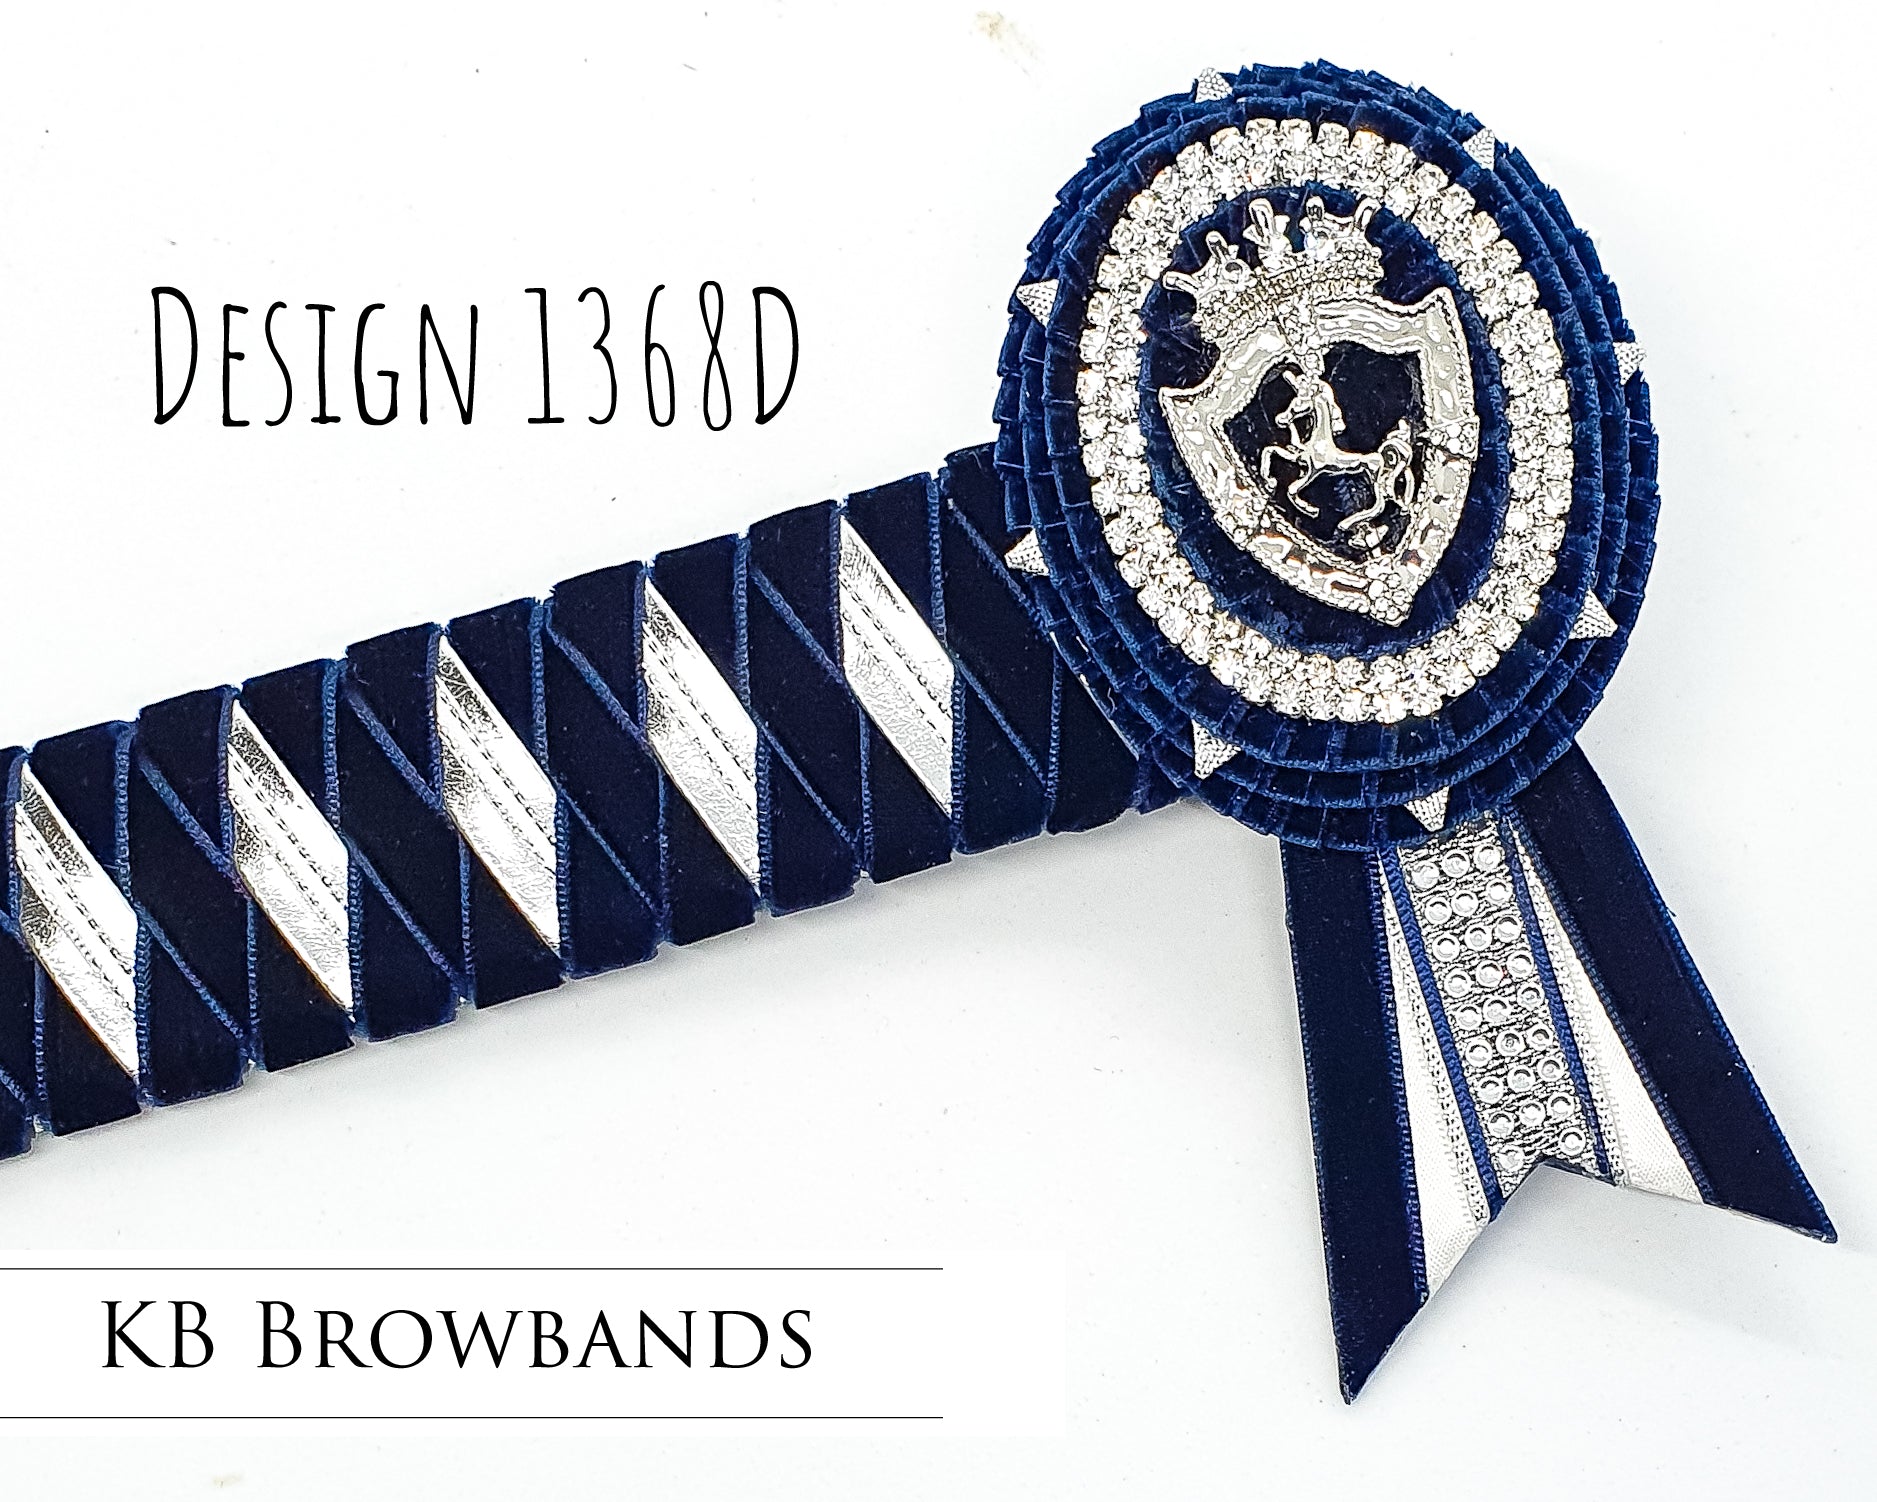 KB Browbands design 1368D